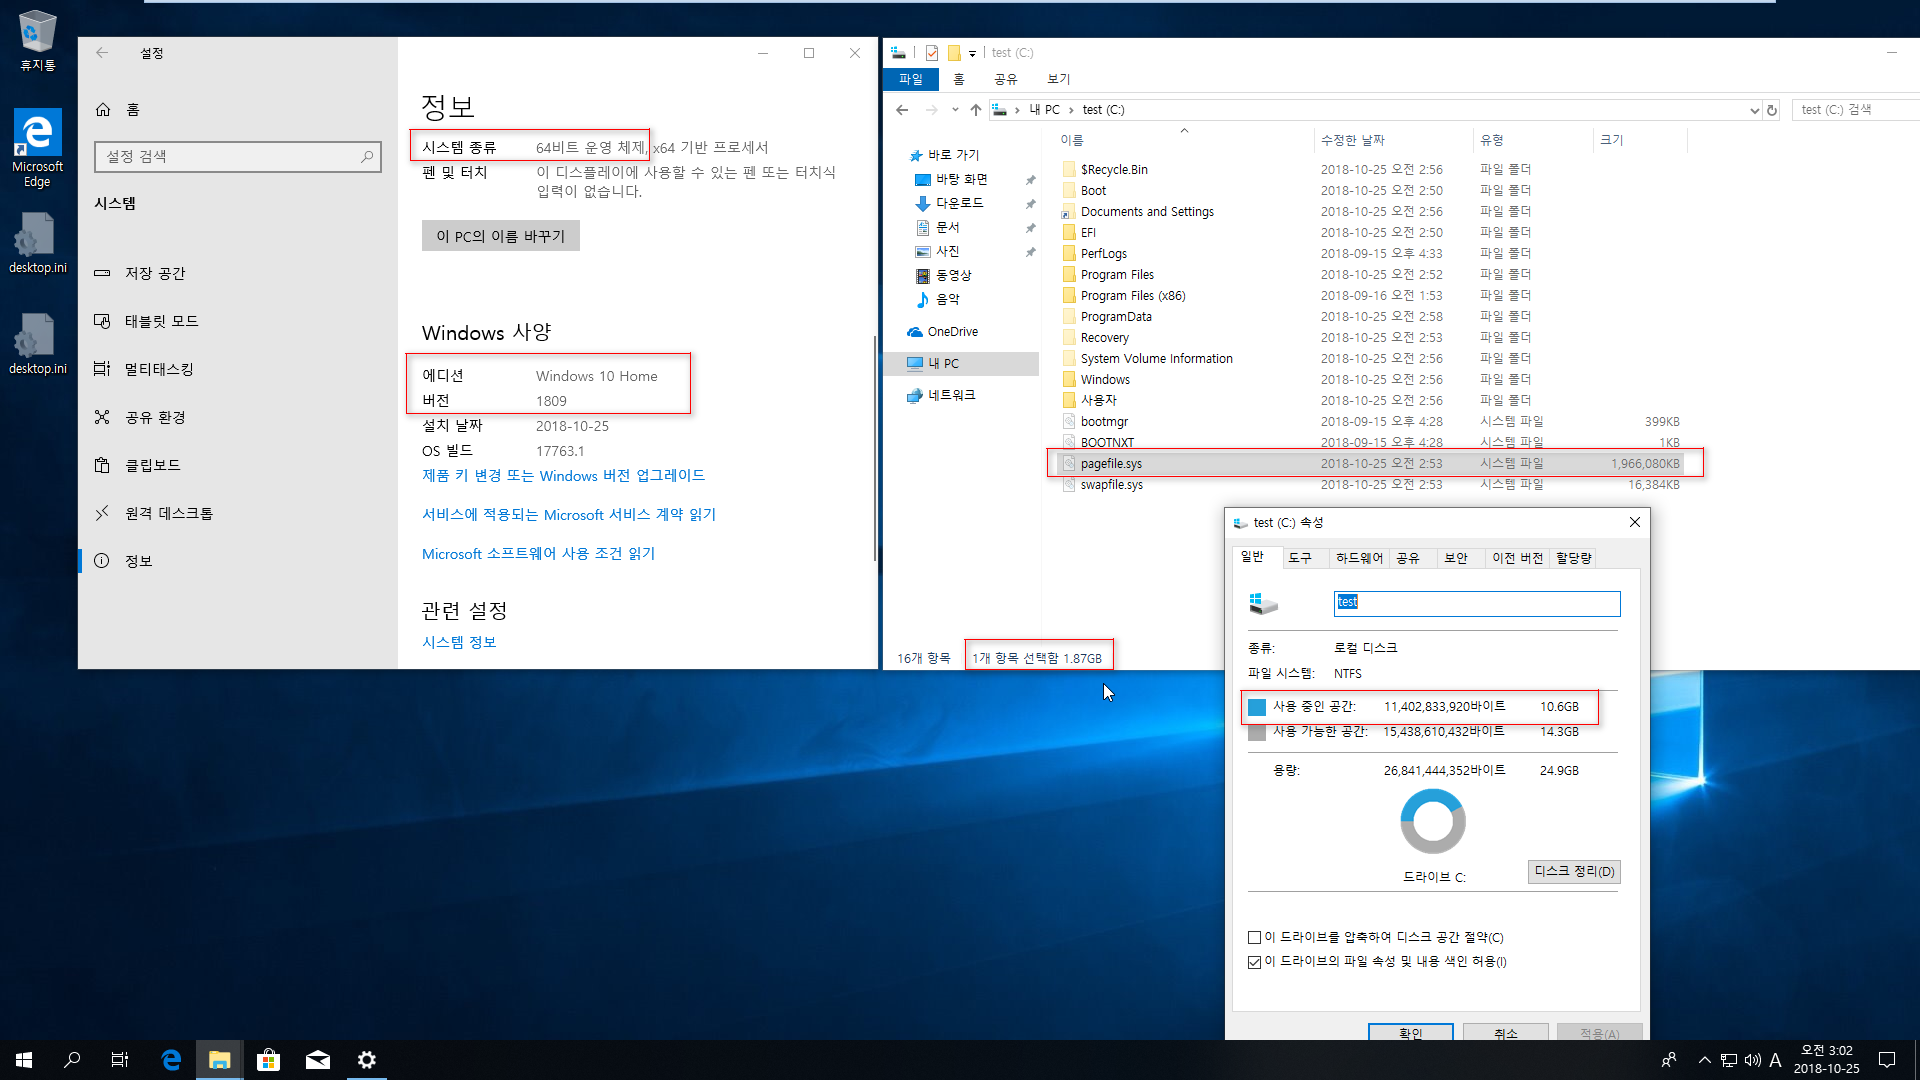 Windows 10 버전 1809 RS5 [레드스톤5] 이미지 크기 비교 - 64비트 - Home 설치 테스트 - 순수한 윈도 용량은 8.7GB 정도 되네요 2018-10-25_030215.png